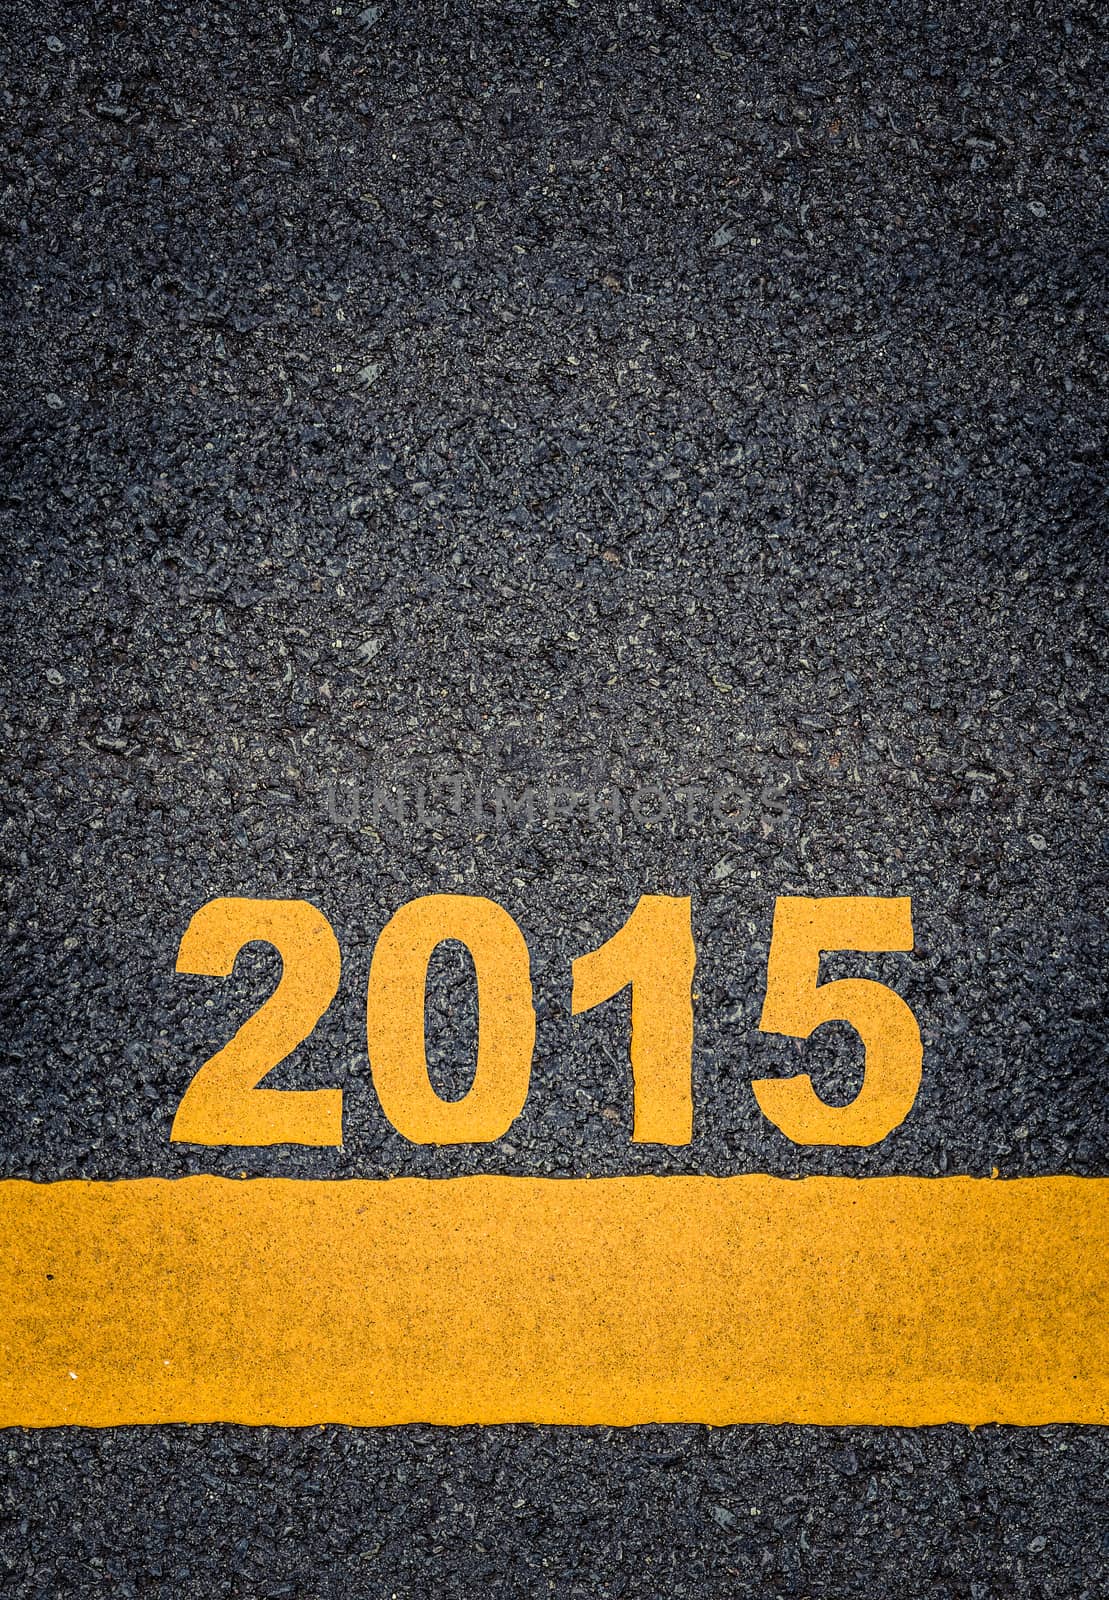 Asphalt Road Markings Showing 2015 by mrdoomits